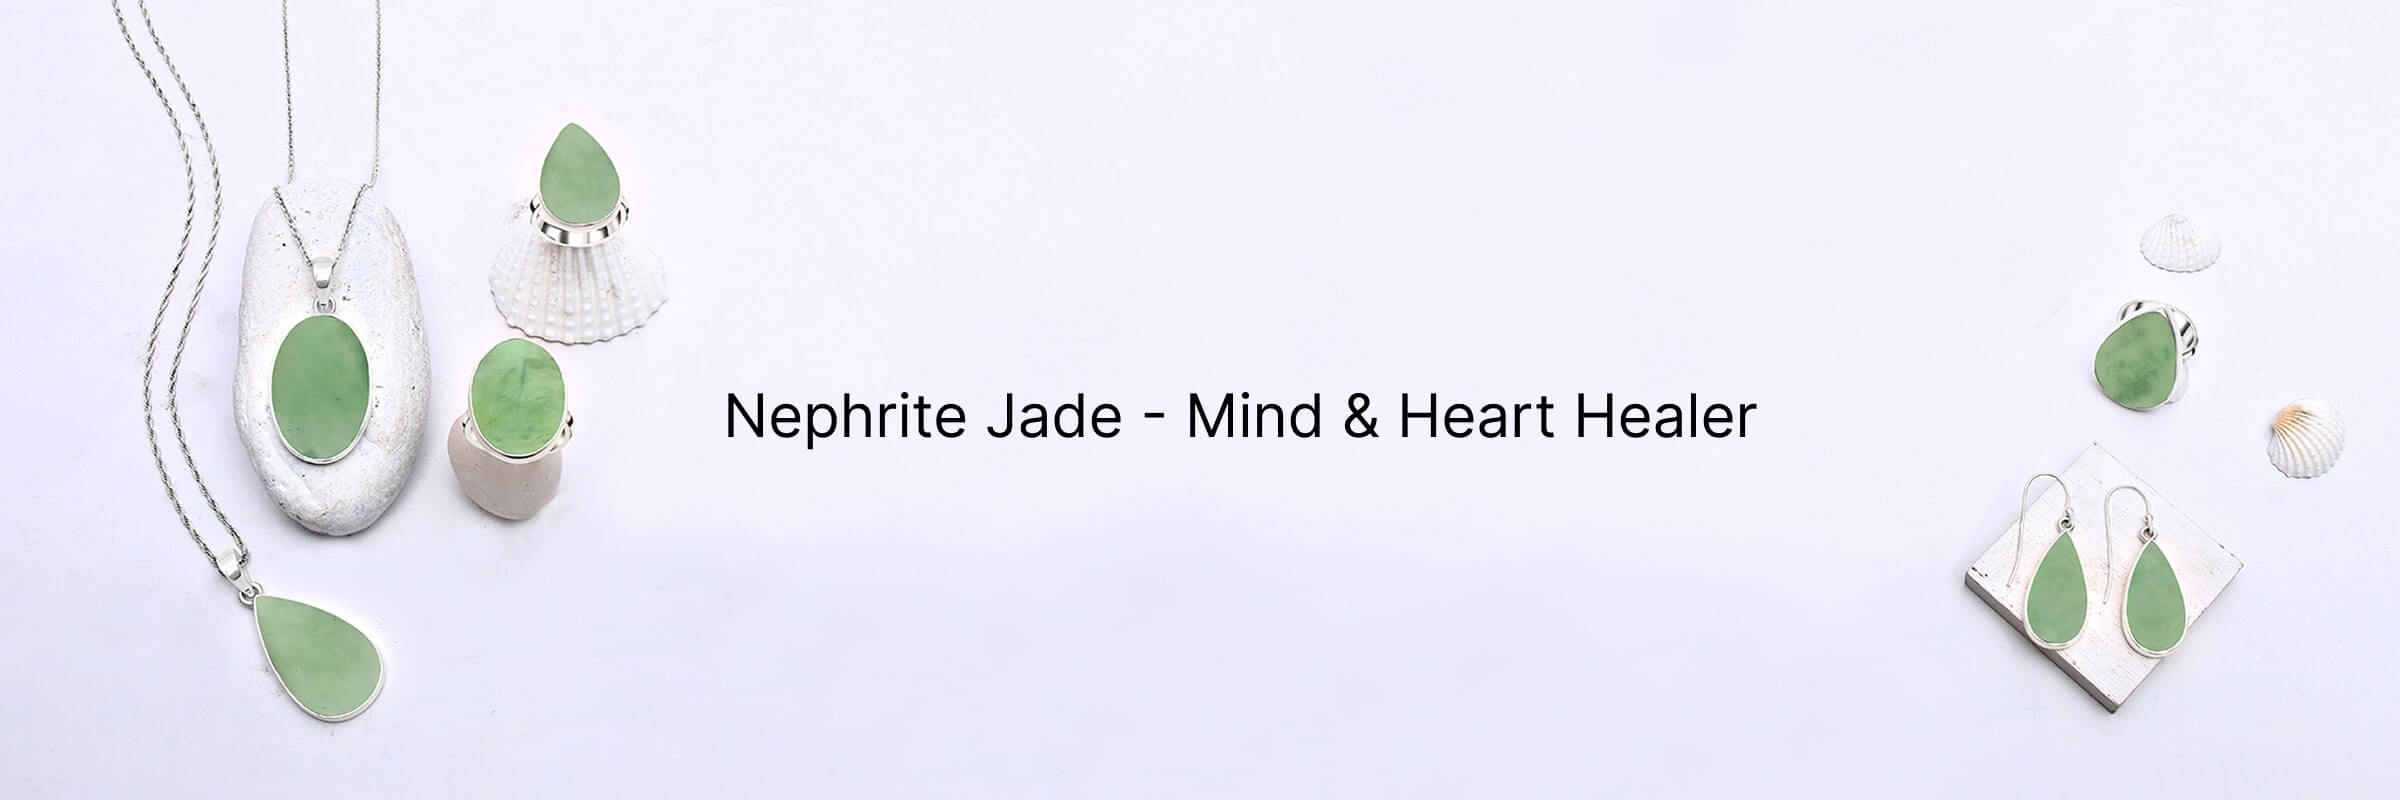 Nephrite Jade Mental & Emotional Healing Properties